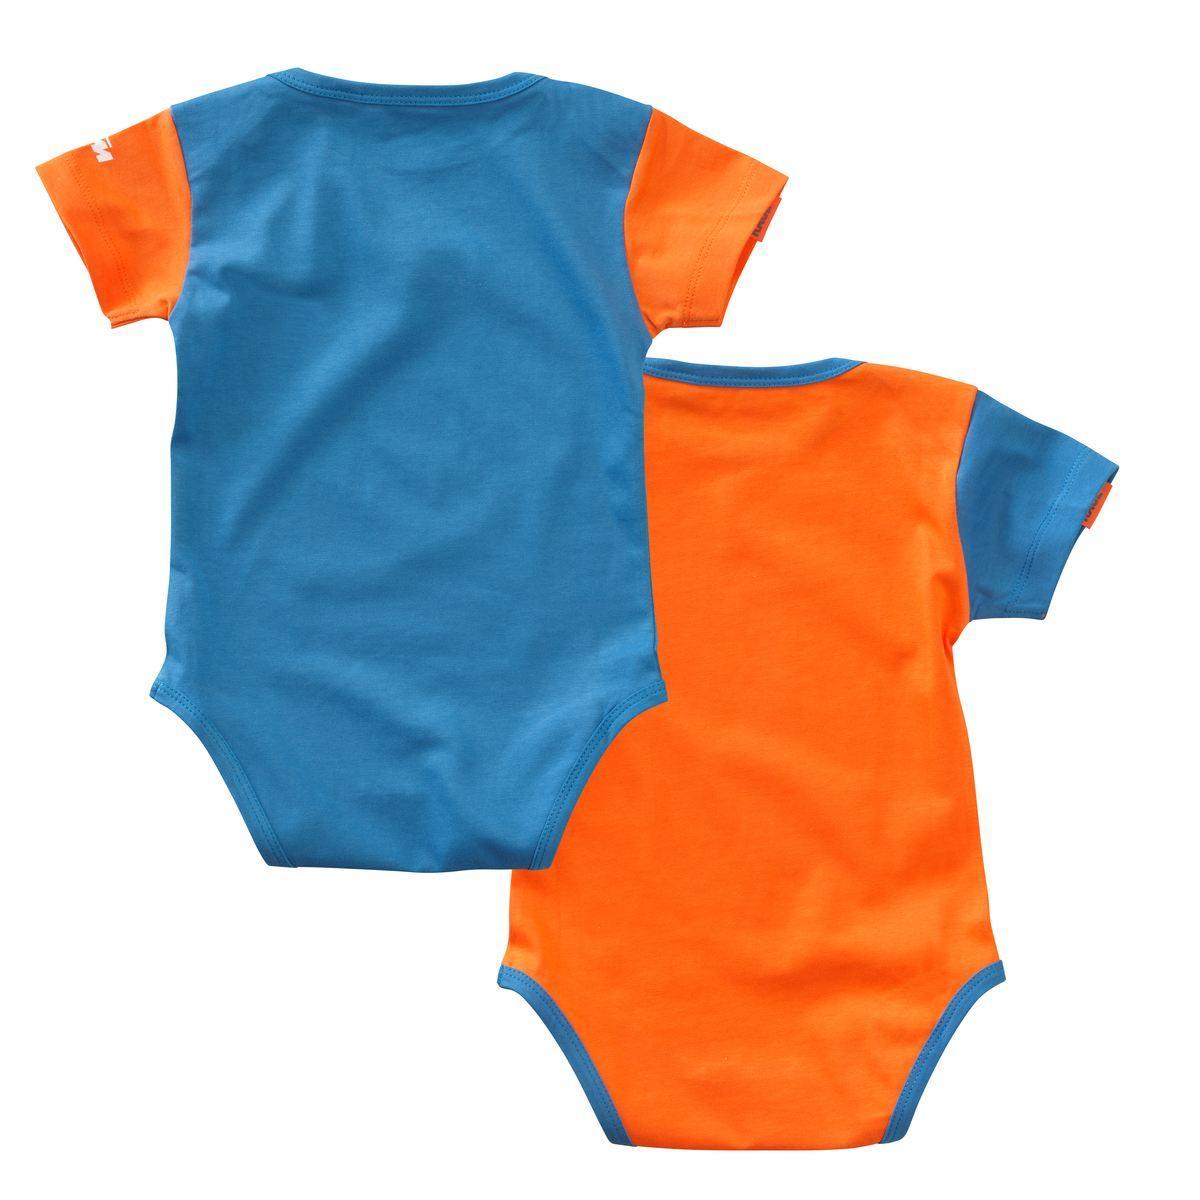 Selected image for KTM-MOTO Bodi za bebe 2/1 Radical plavi i narandžasti